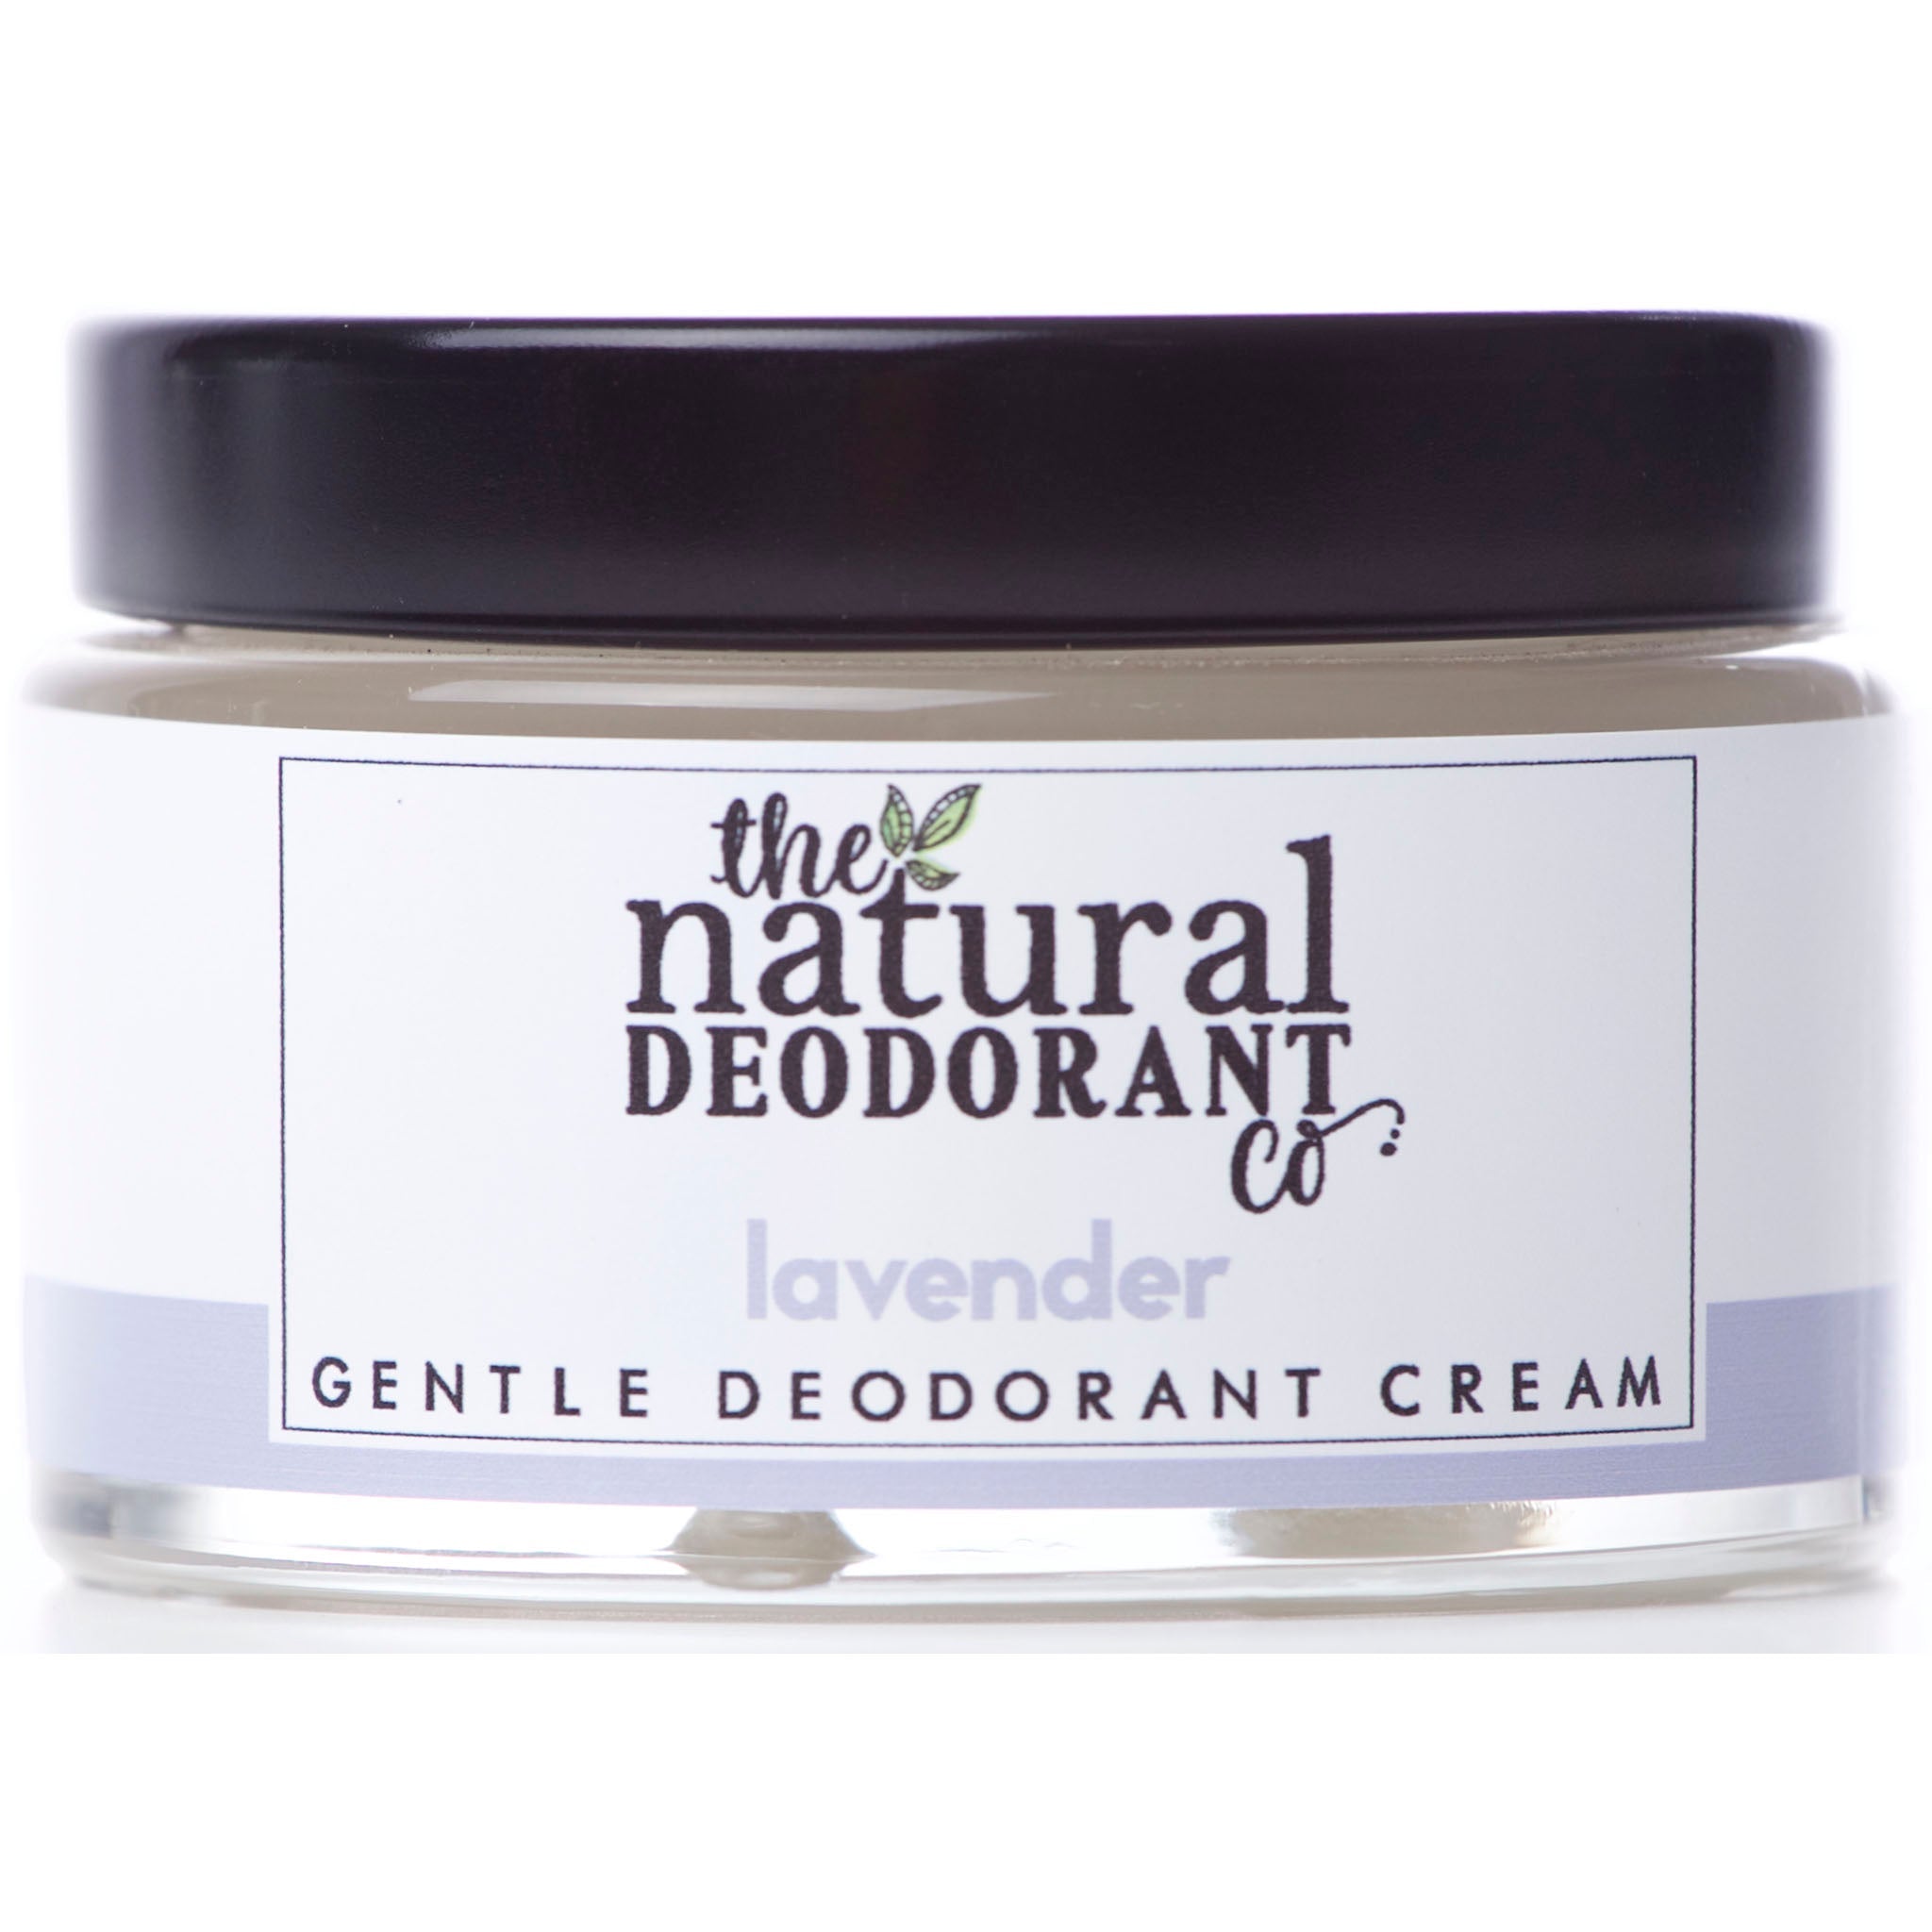 Gentle Deodorant Cream Lavender - mypure.co.uk